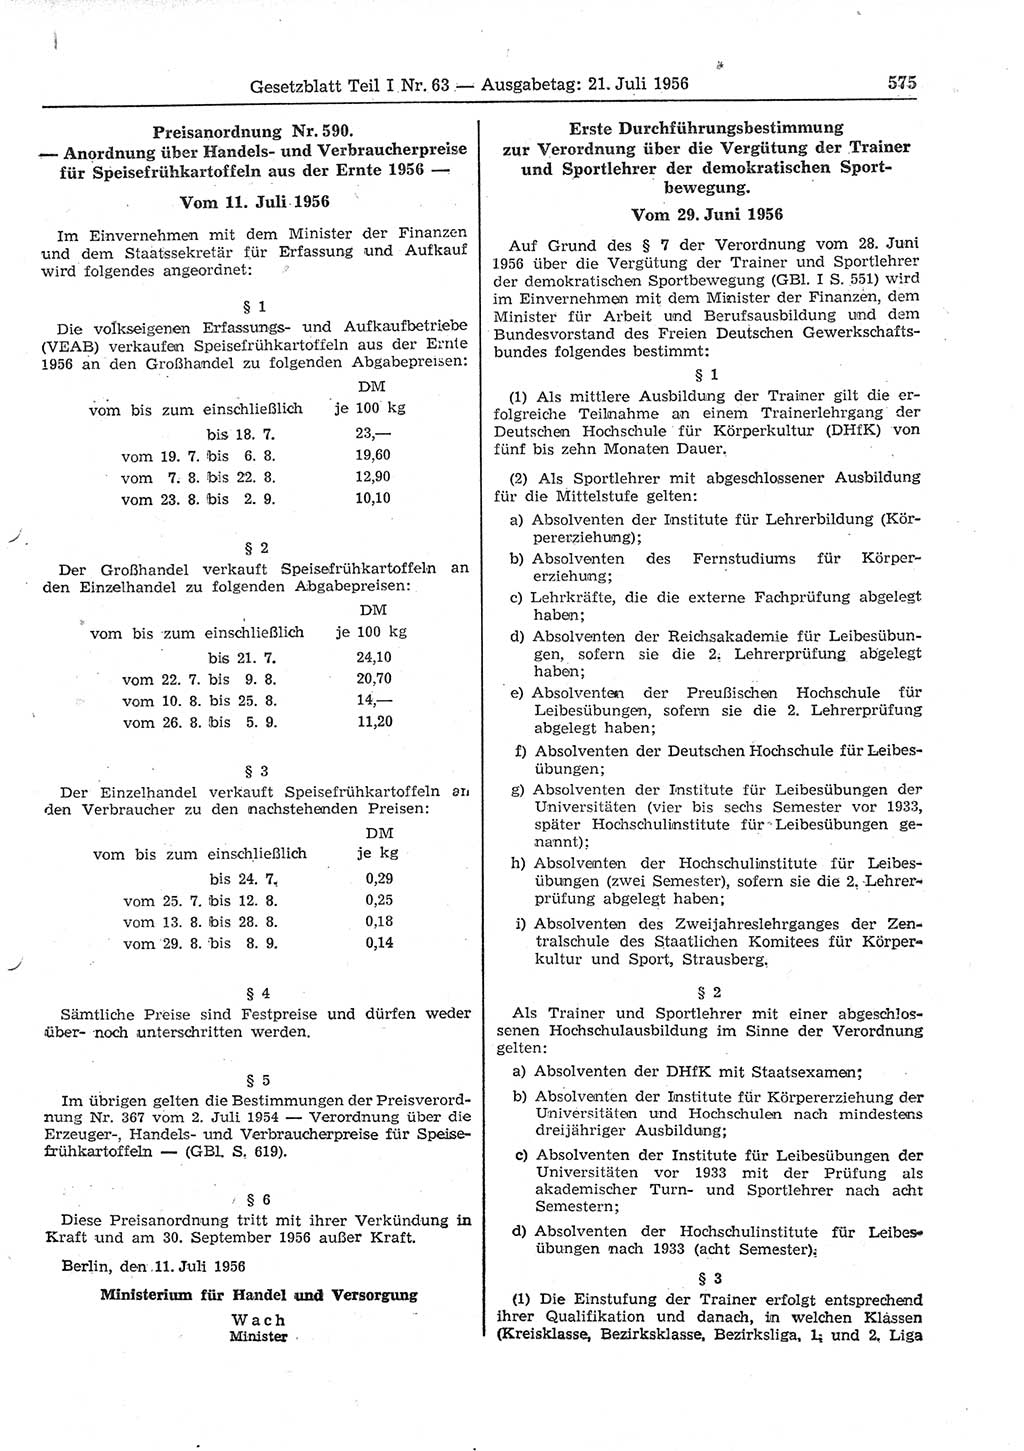 Gesetzblatt (GBl.) der Deutschen Demokratischen Republik (DDR) Teil Ⅰ 1956, Seite 575 (GBl. DDR Ⅰ 1956, S. 575)